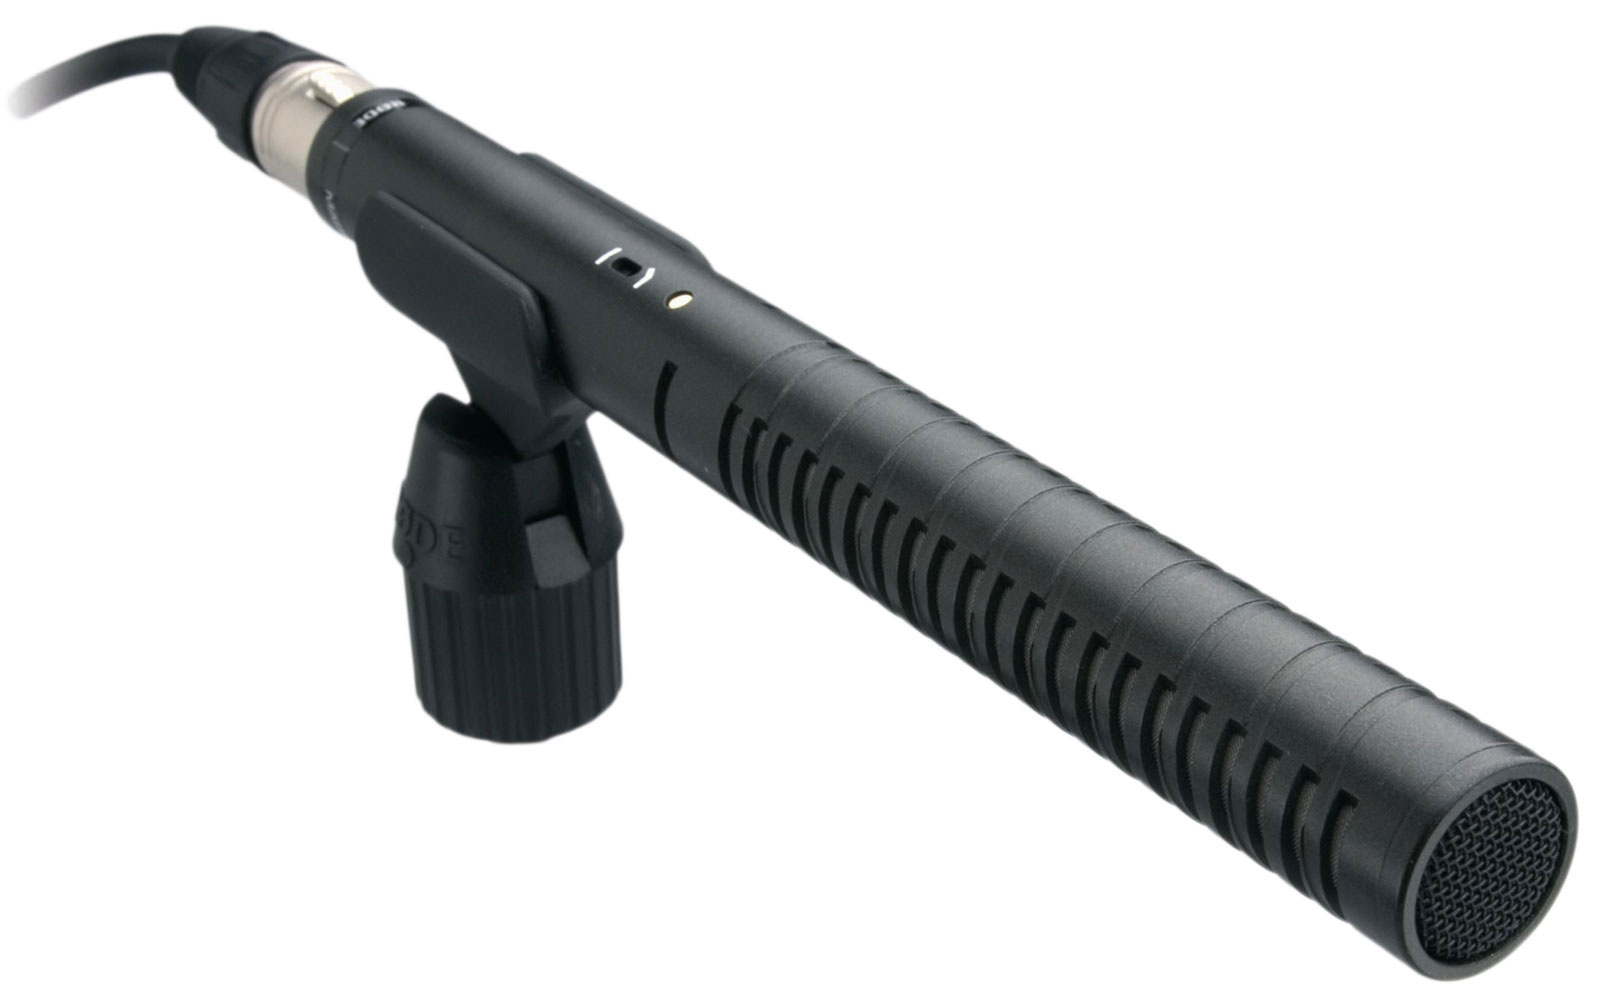 Rode NTG1 Condenser Shotgun Microphone